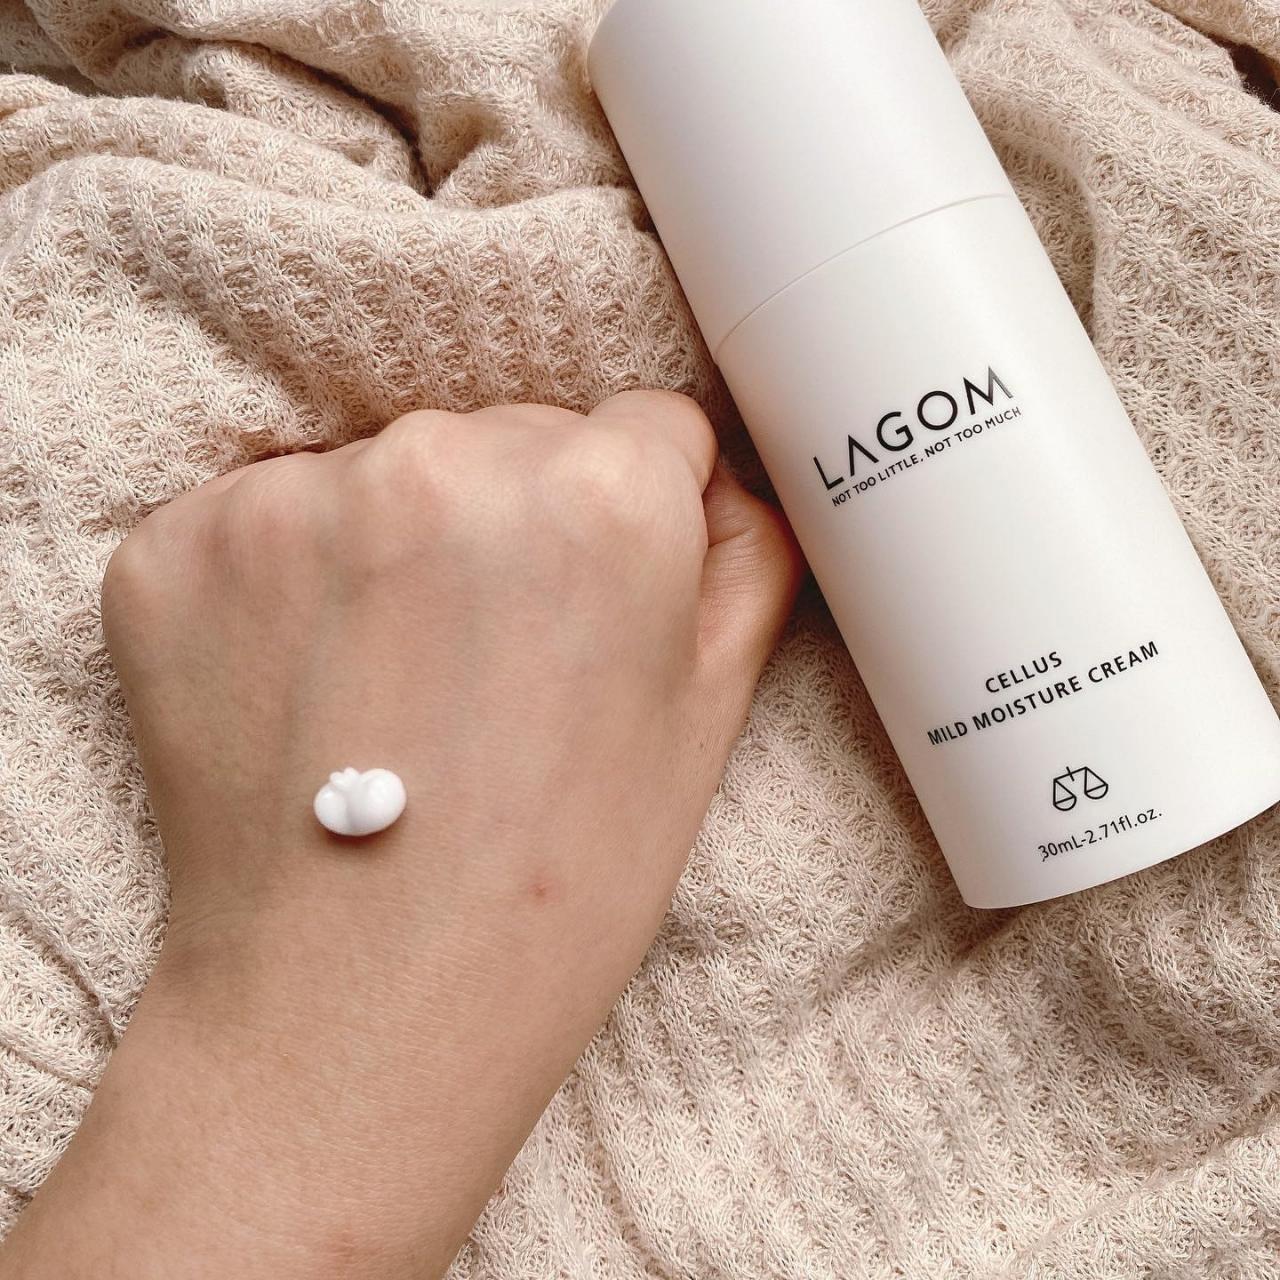 Lagom Skincare, The Swedish Secret to Balanced, Sustainable Skincare